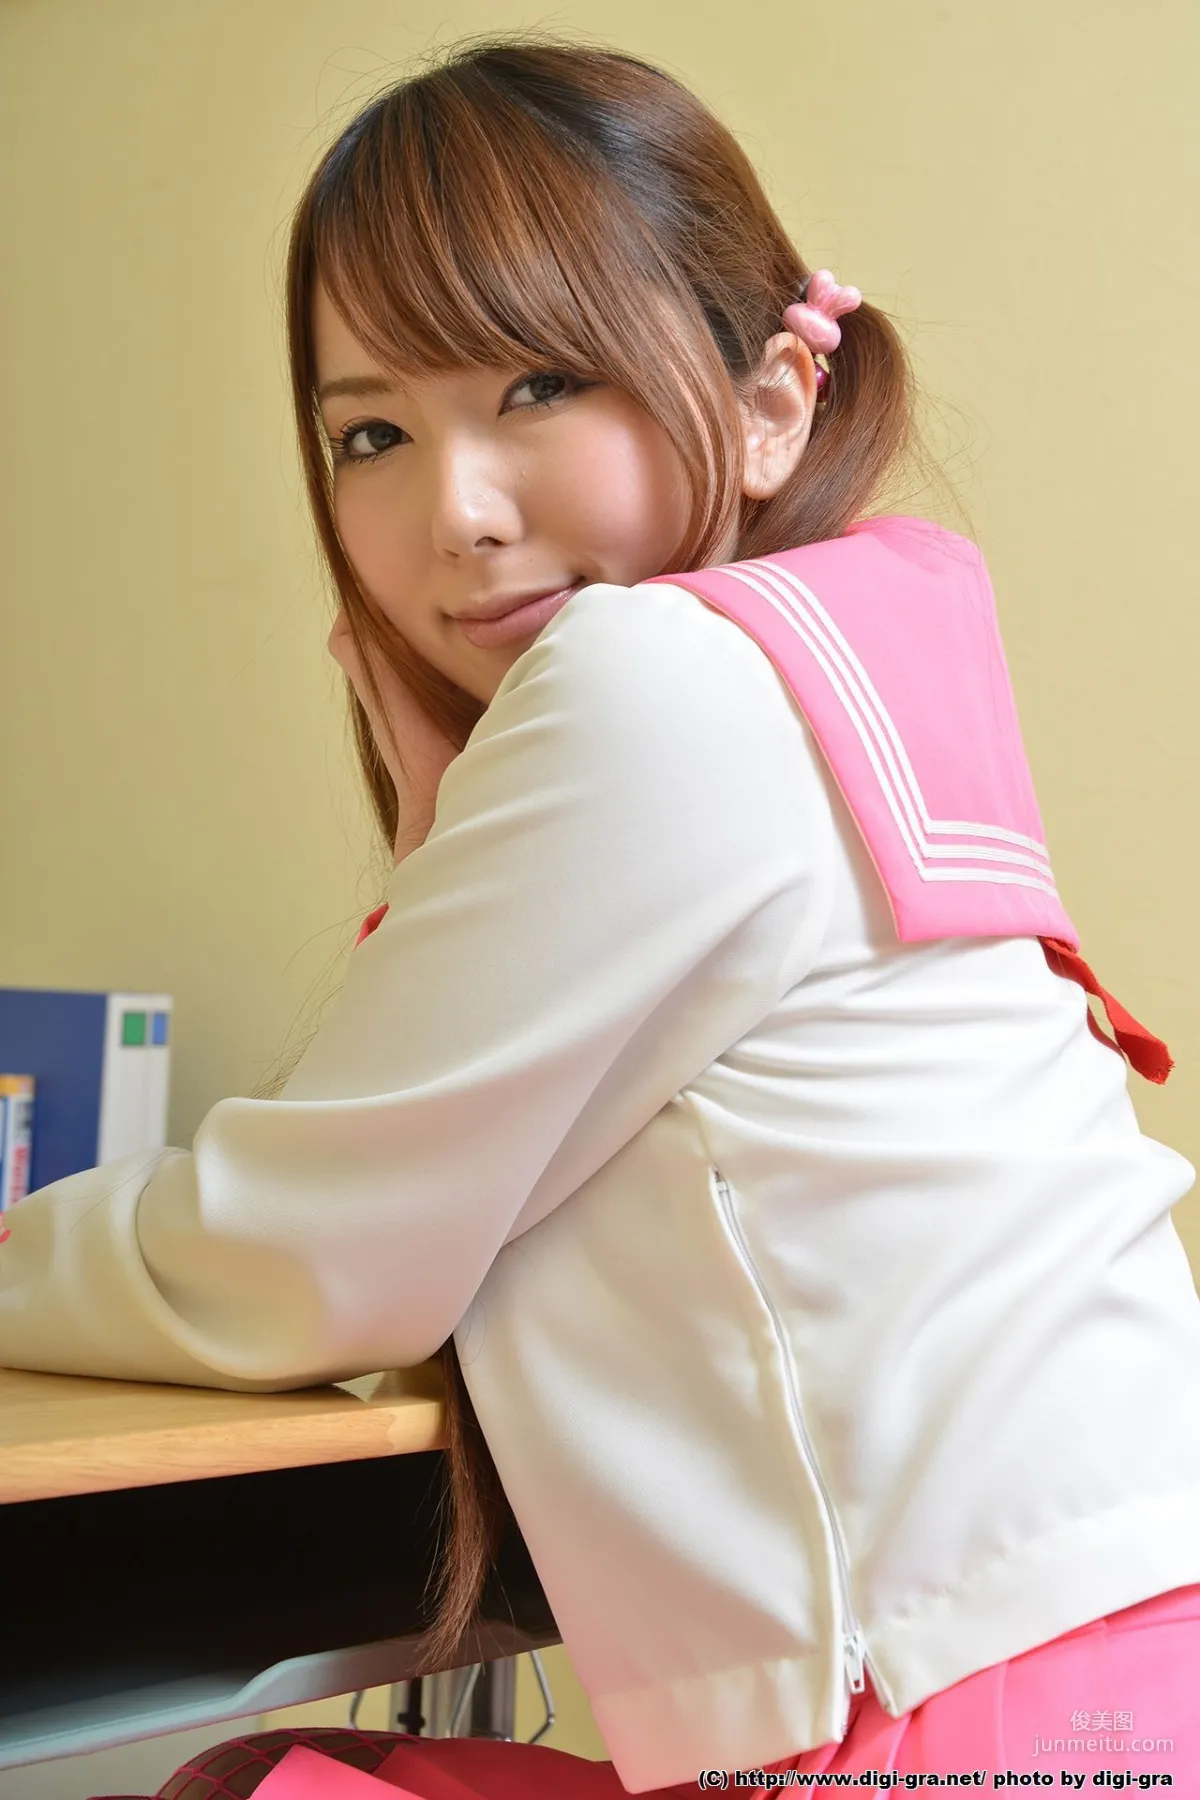 Yui Hatano 波多野結衣 红色丝袜学生制服 Set02 [Digi-Graデジグラ] 写真集7